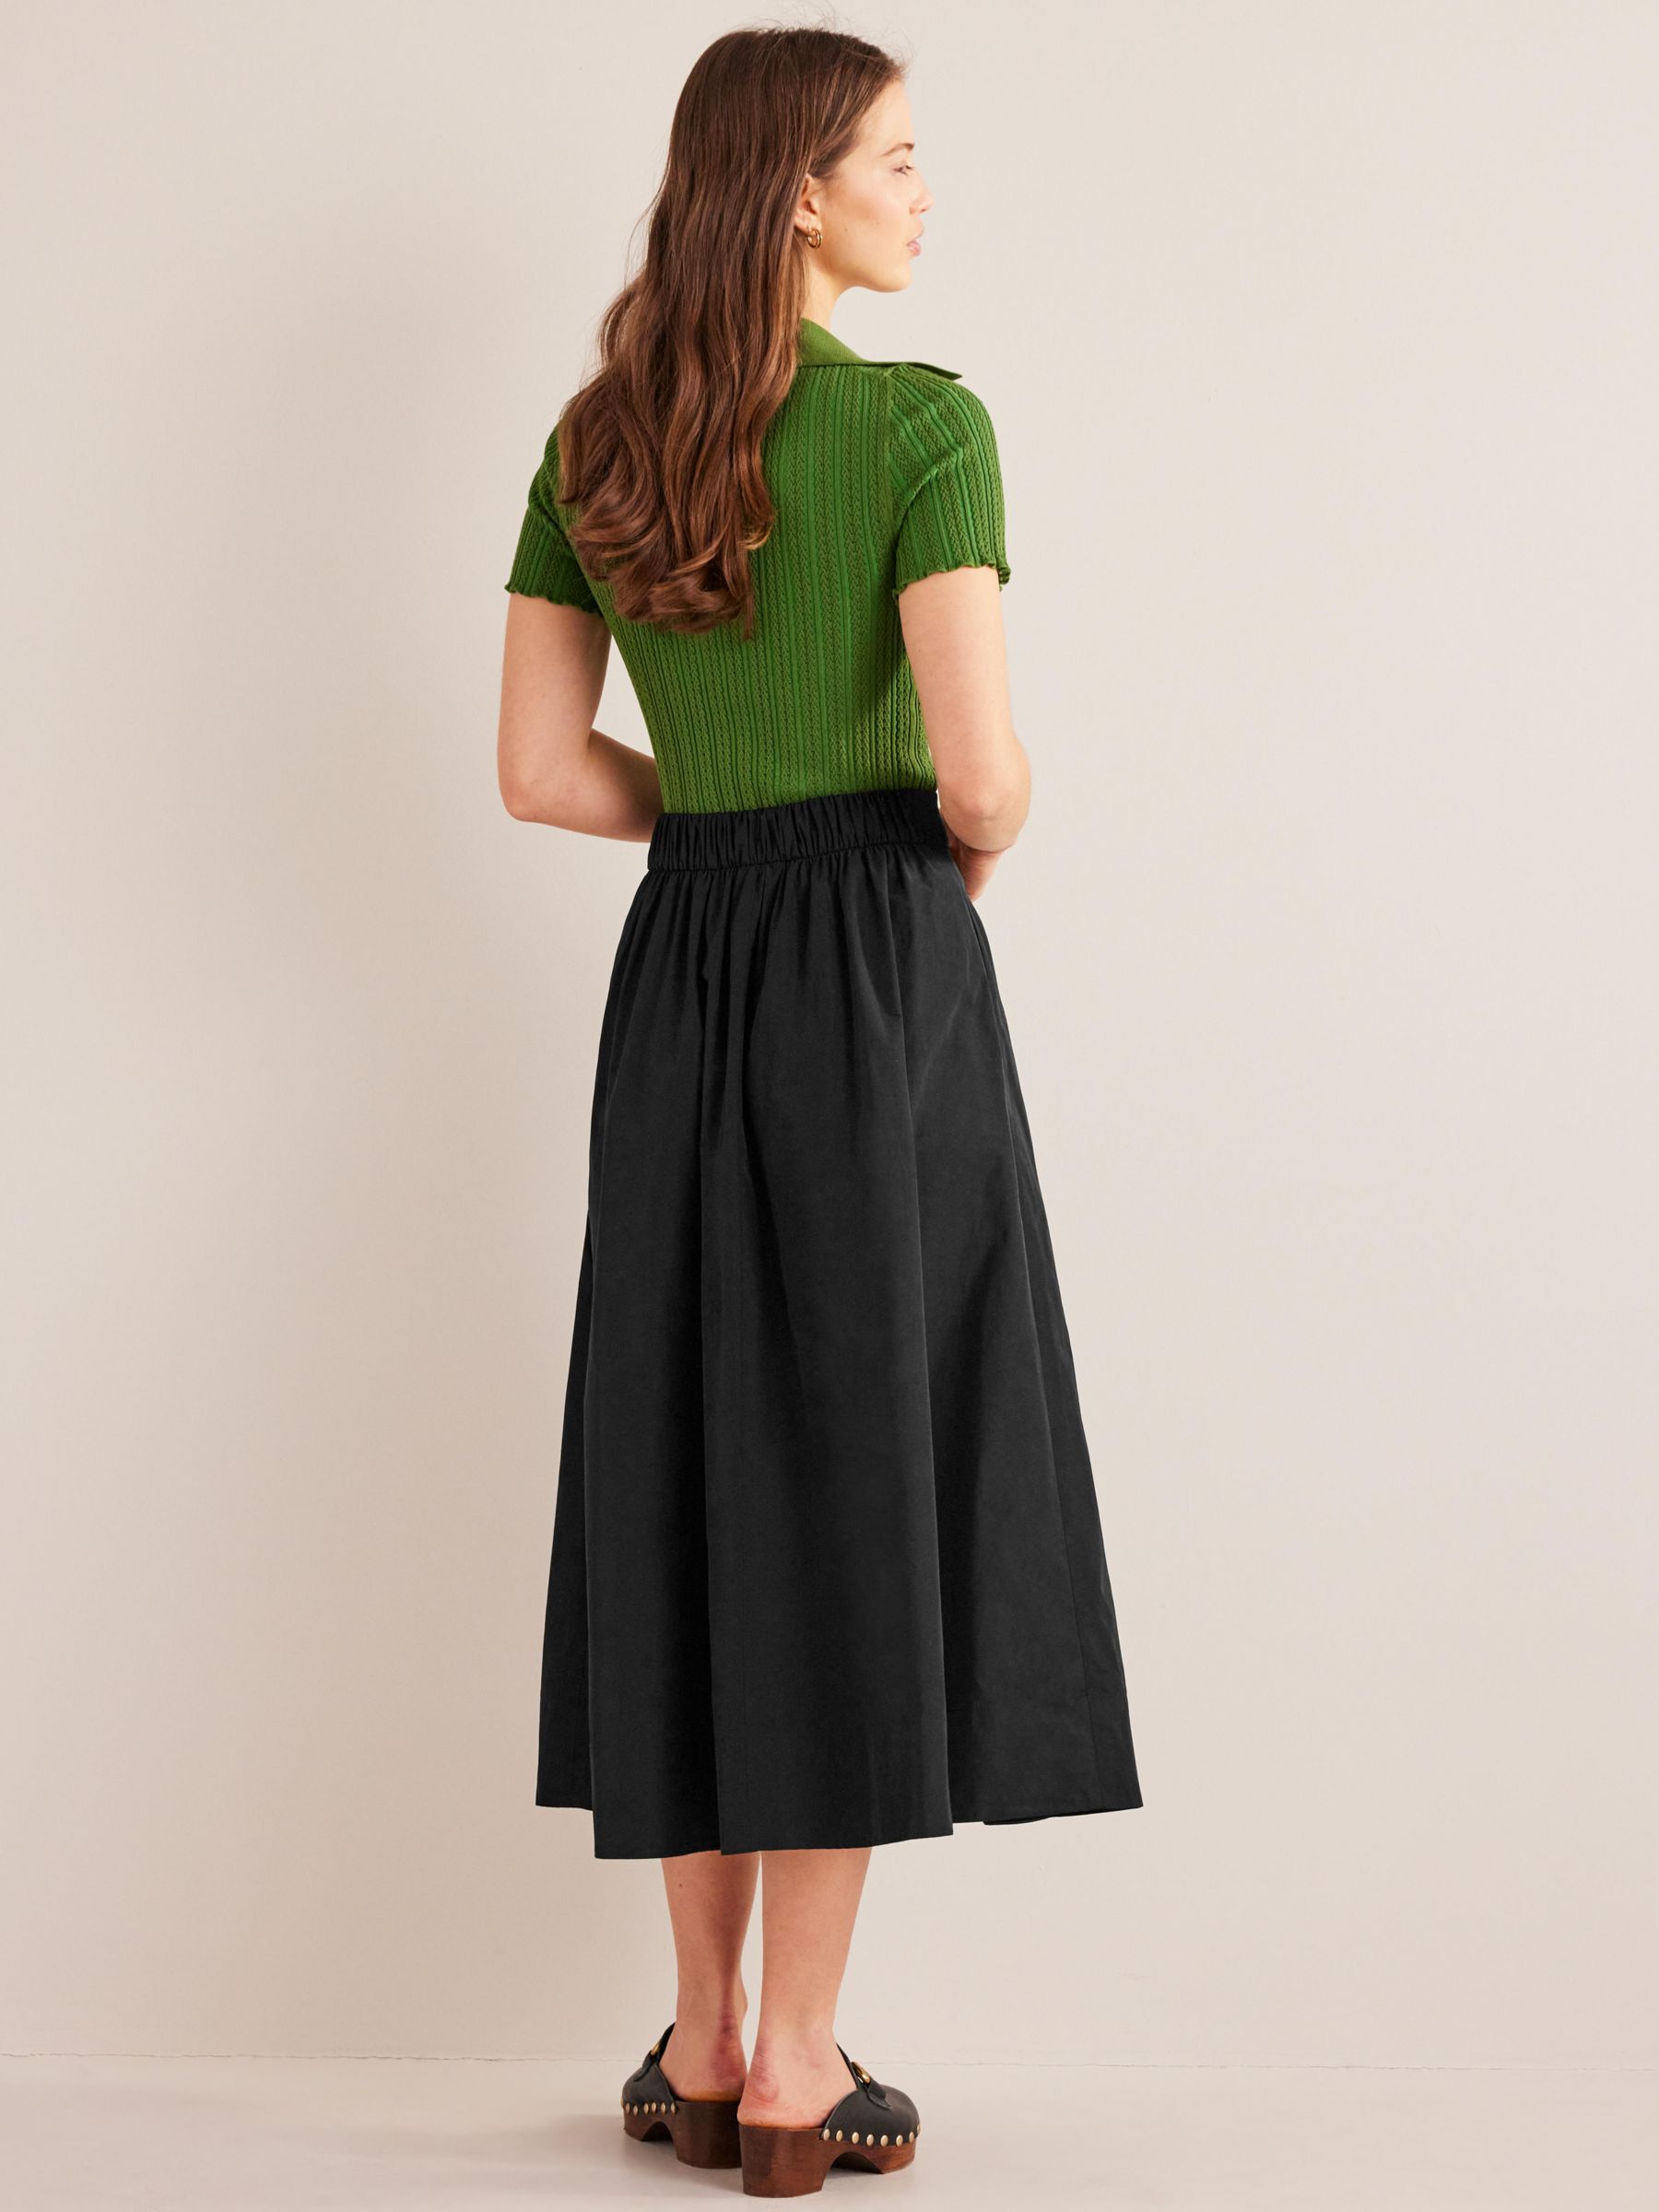 Boden Full Taffeta Skirt, Black, 8